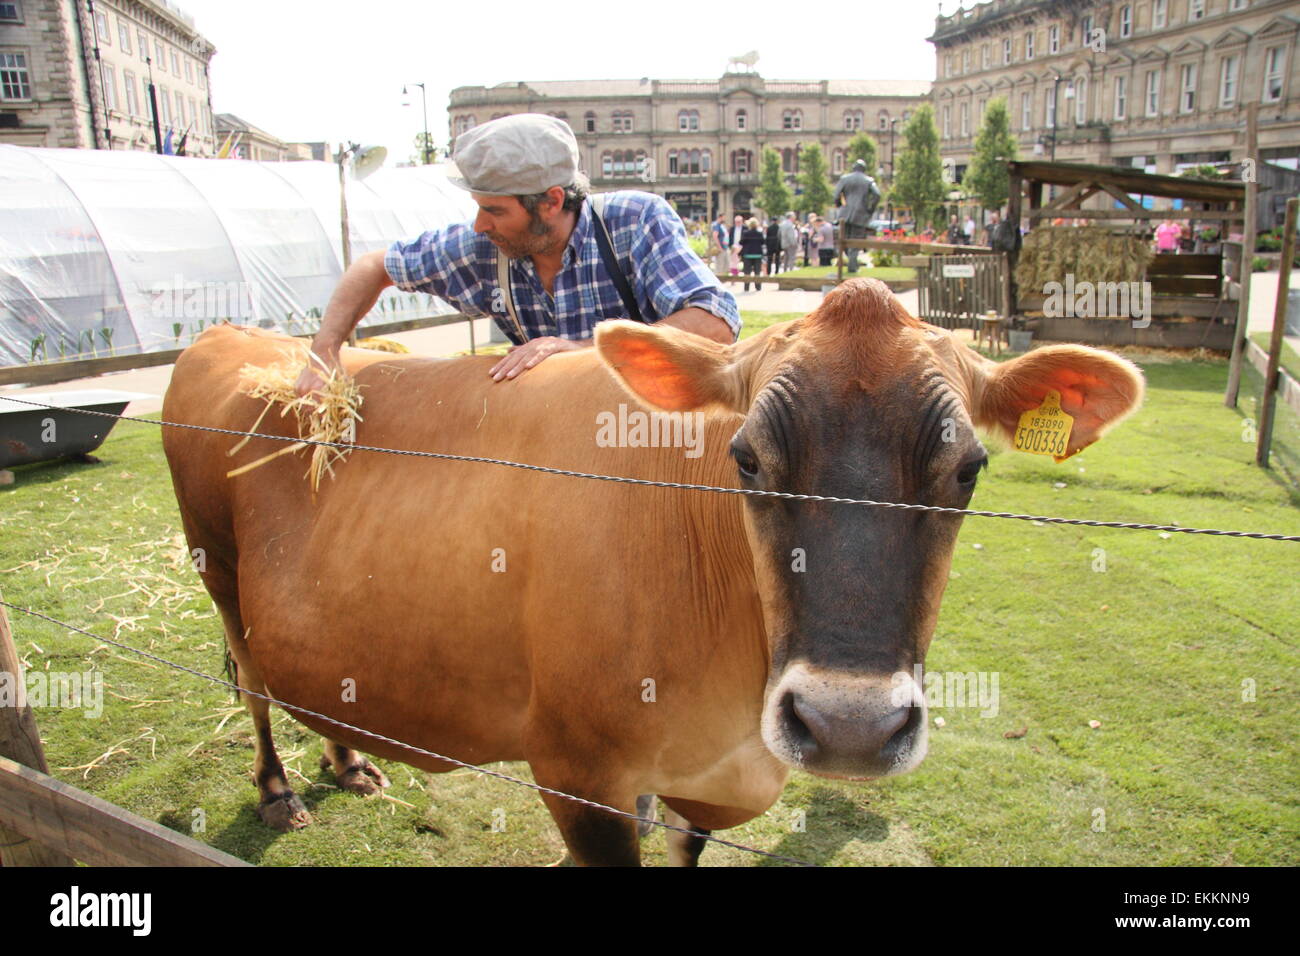 Eine Kuh bekommt eine Rub-Down während der Pop-up-French Farm-Veranstaltung in Huddersfield Stadtzentrum anlässlich der Tour de France 2014, UK Stockfoto